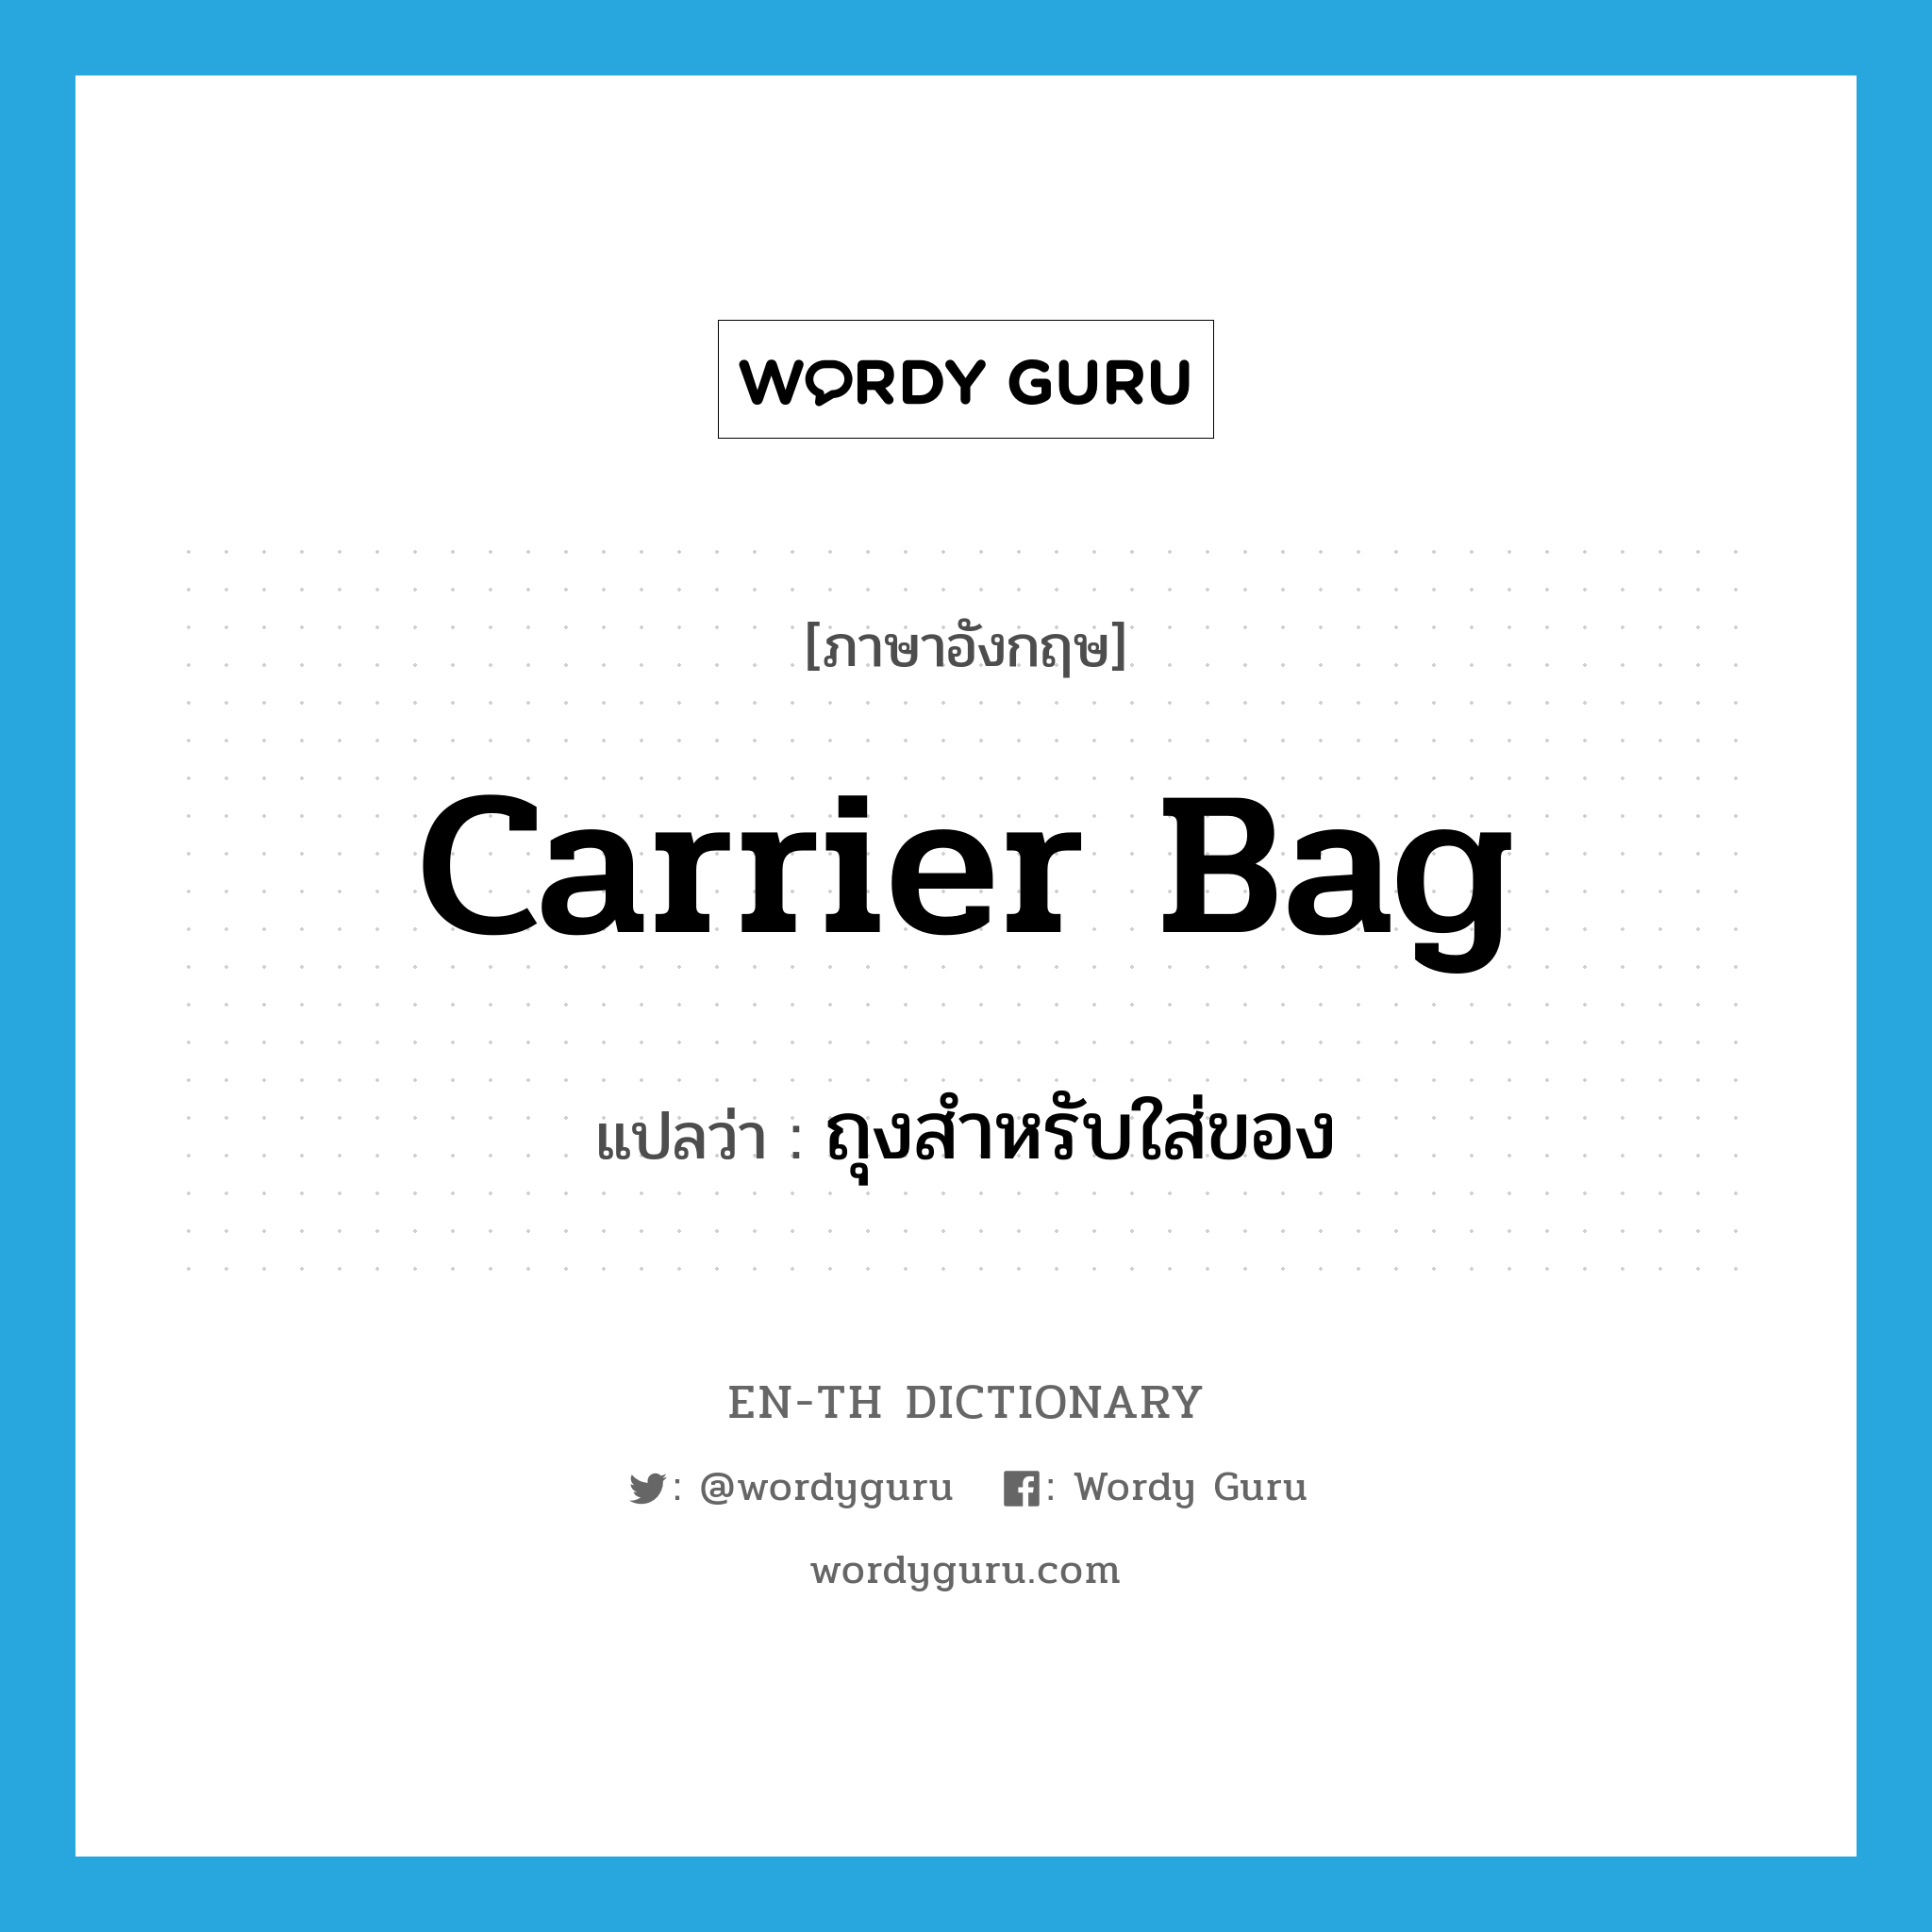 carrier bag แปลว่า?, คำศัพท์ภาษาอังกฤษ carrier bag แปลว่า ถุงสำหรับใส่ของ ประเภท N หมวด N